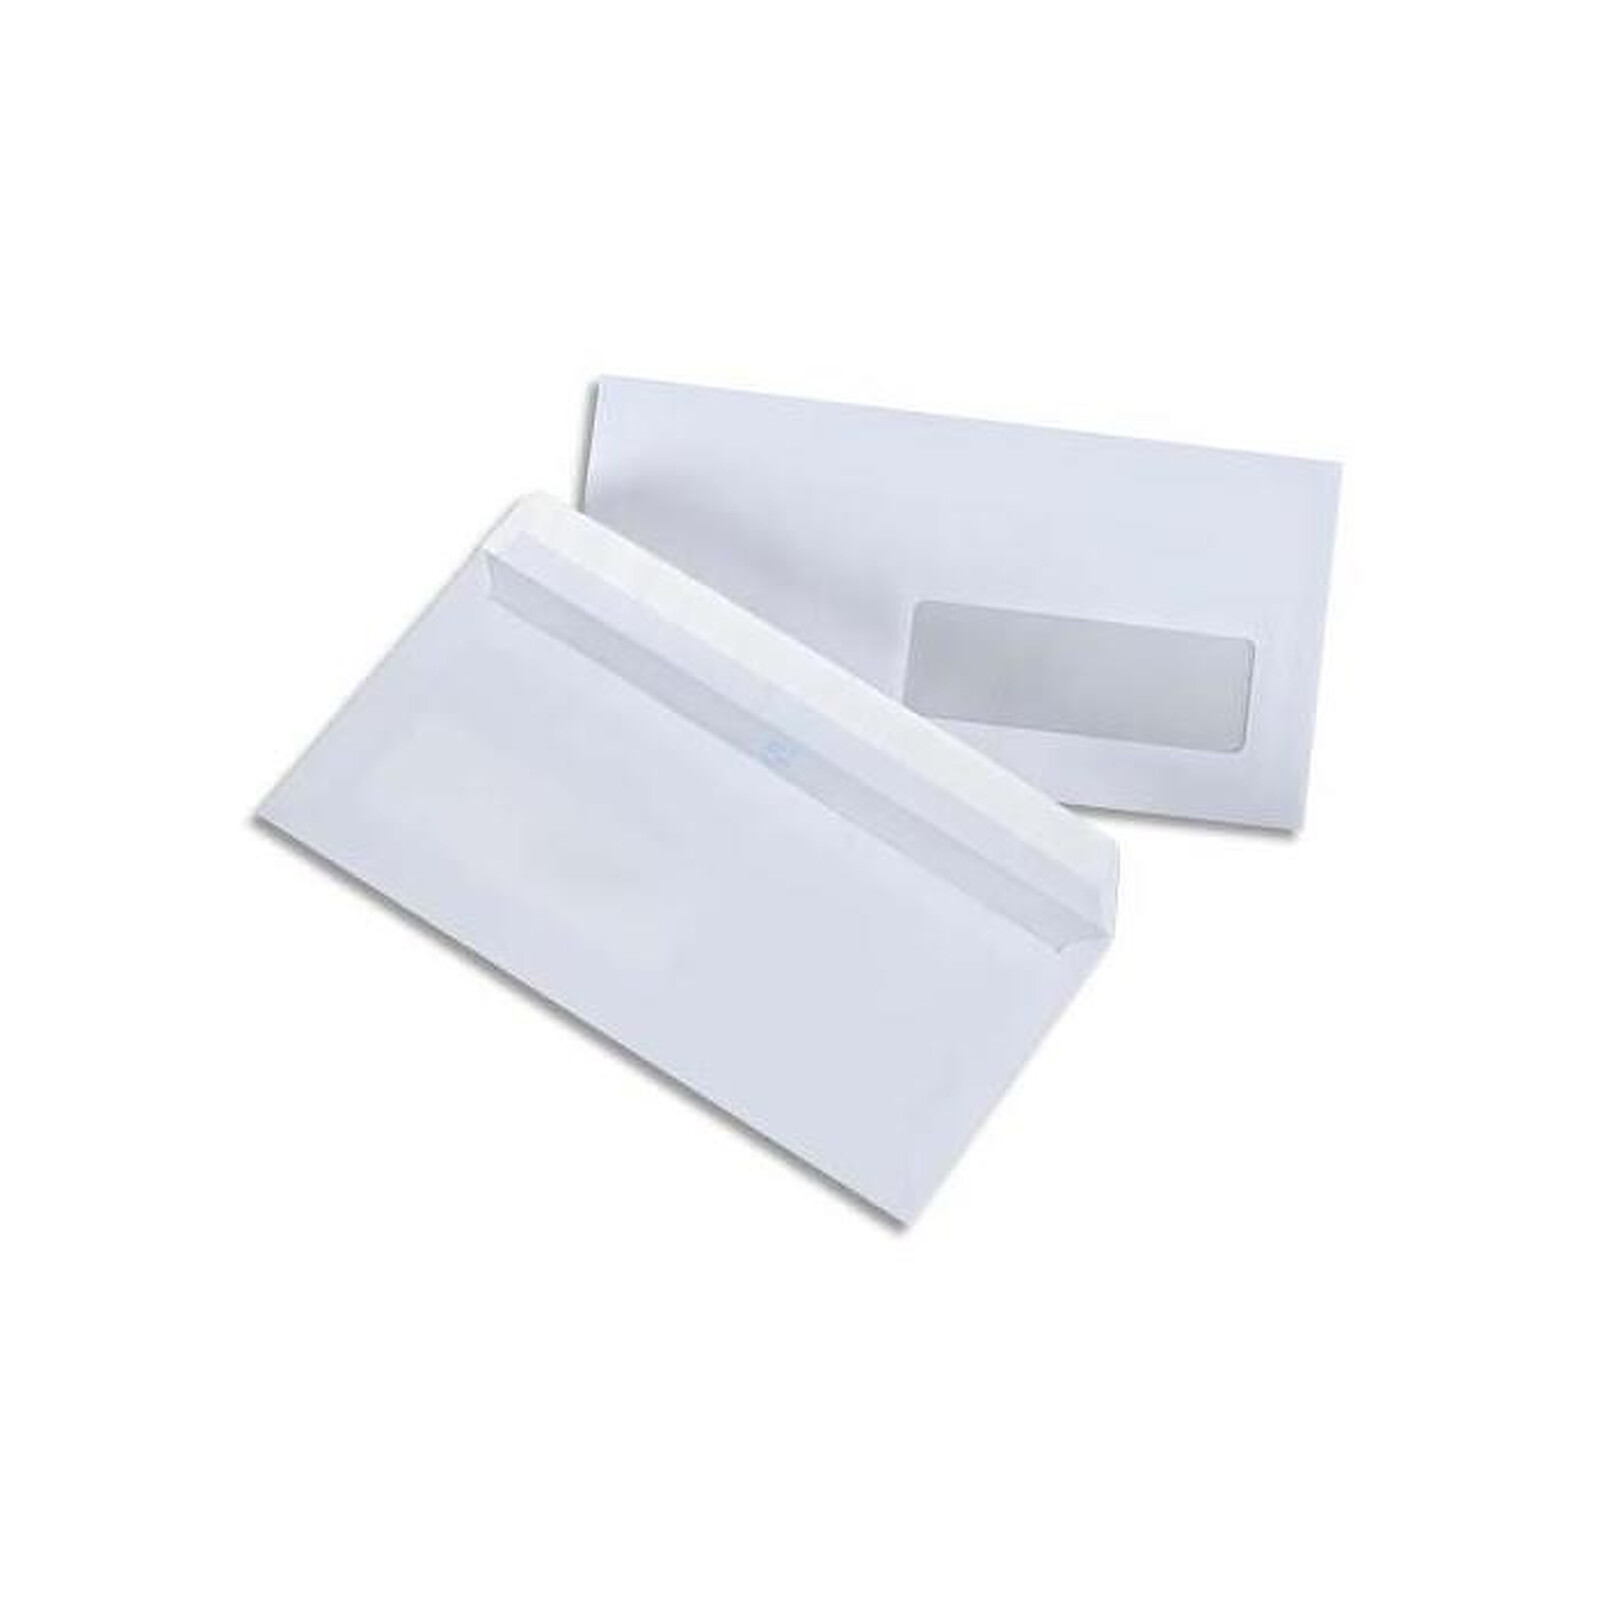 PERGAMY Boite de 500 enveloppes DL 110X220mm blanc 75g à fenêtre